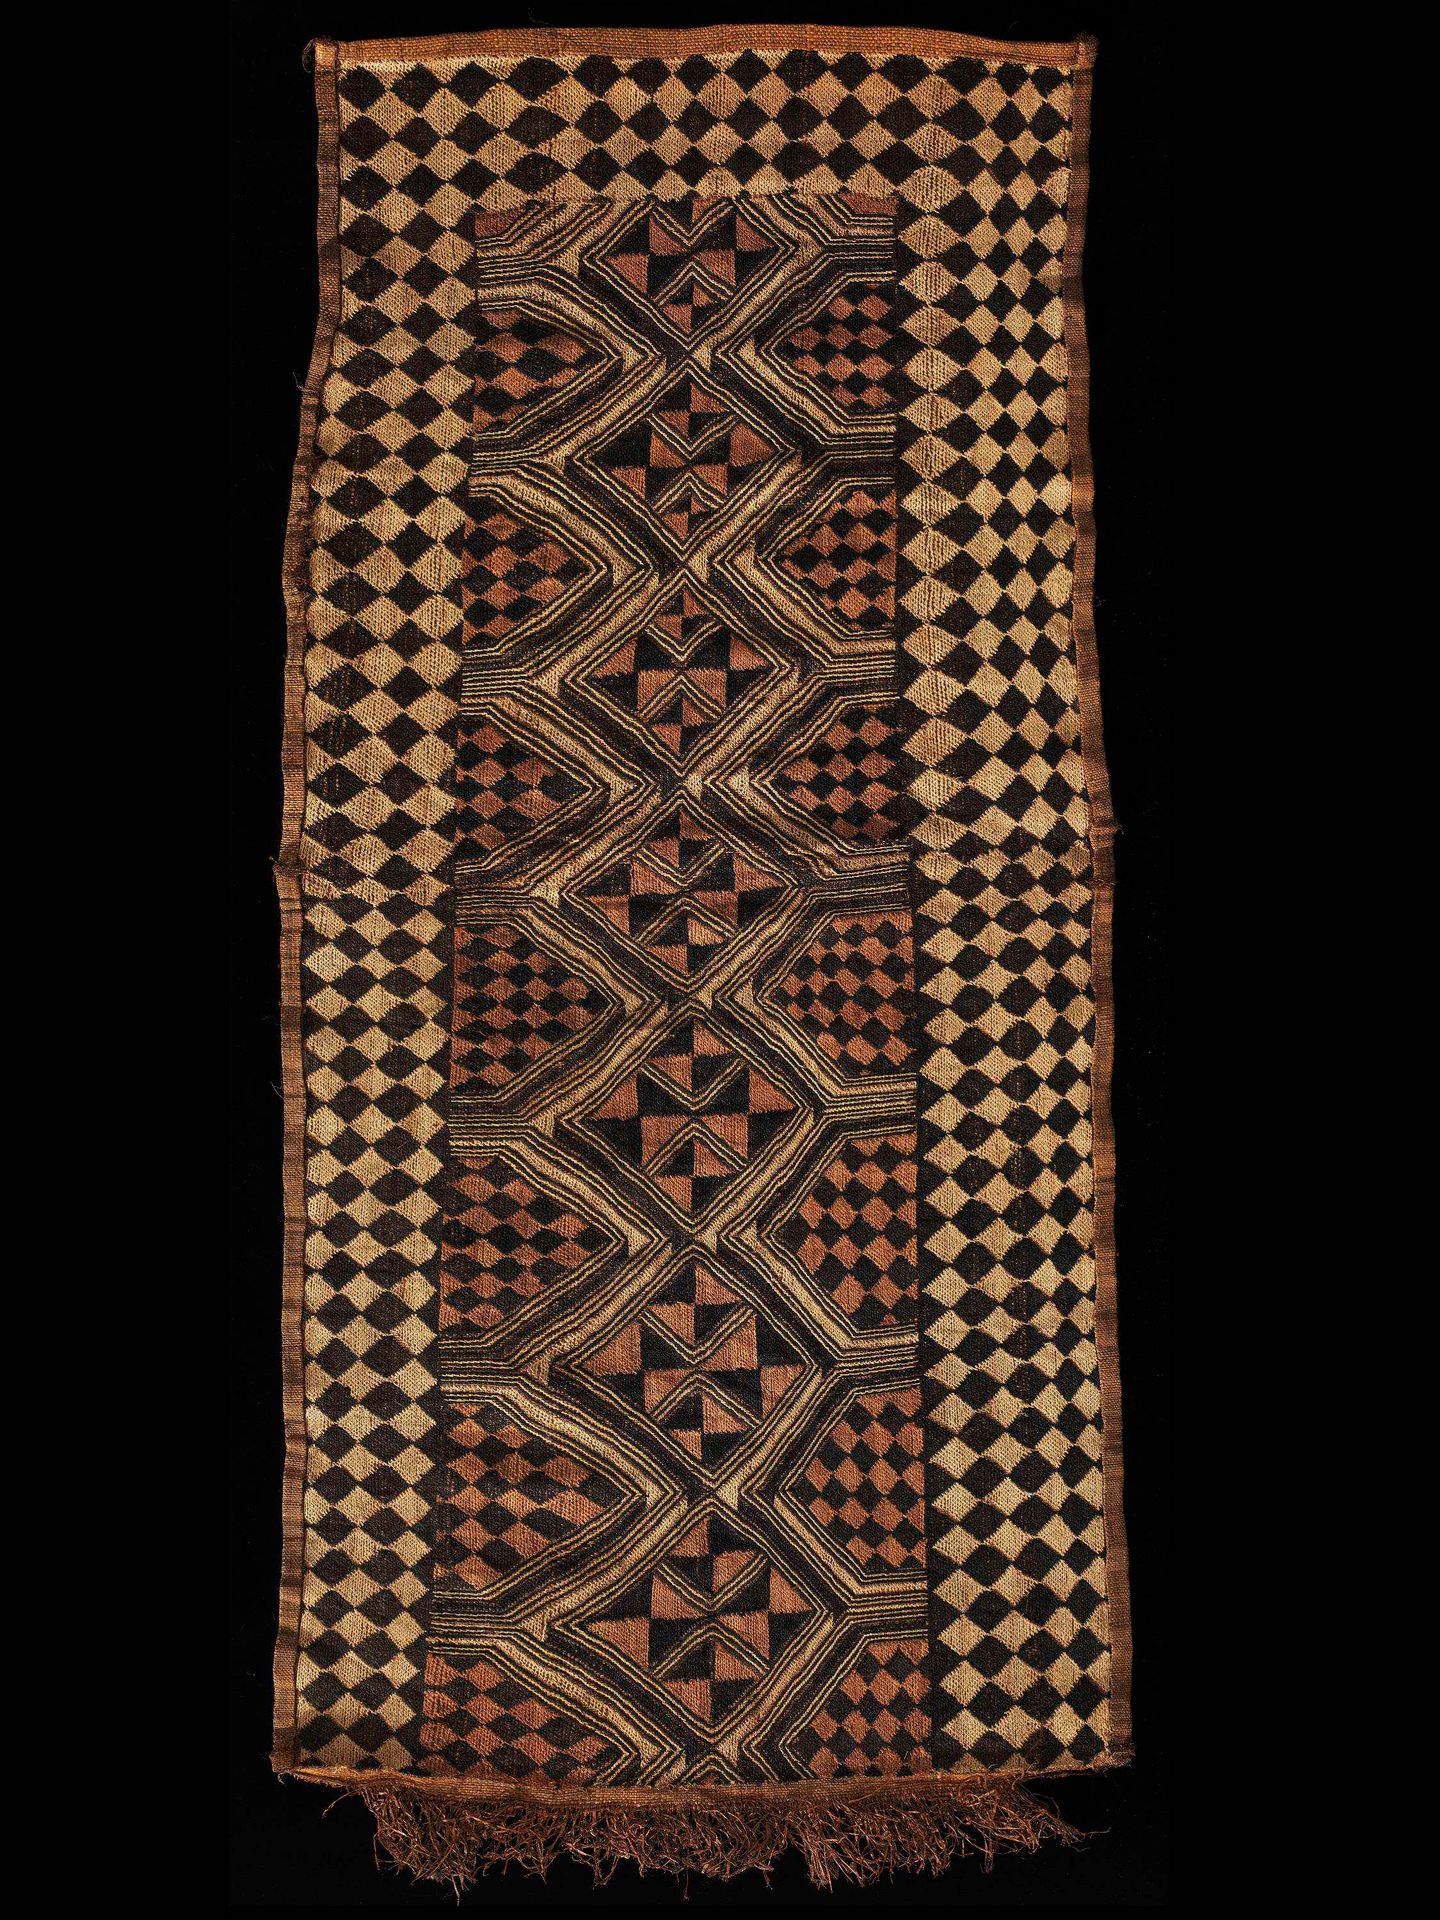 A Kuba Woven Fabric Raphia-Textilie
Kuba, DR Kongo
Ohne Sockel / without base
Ra&hellip;